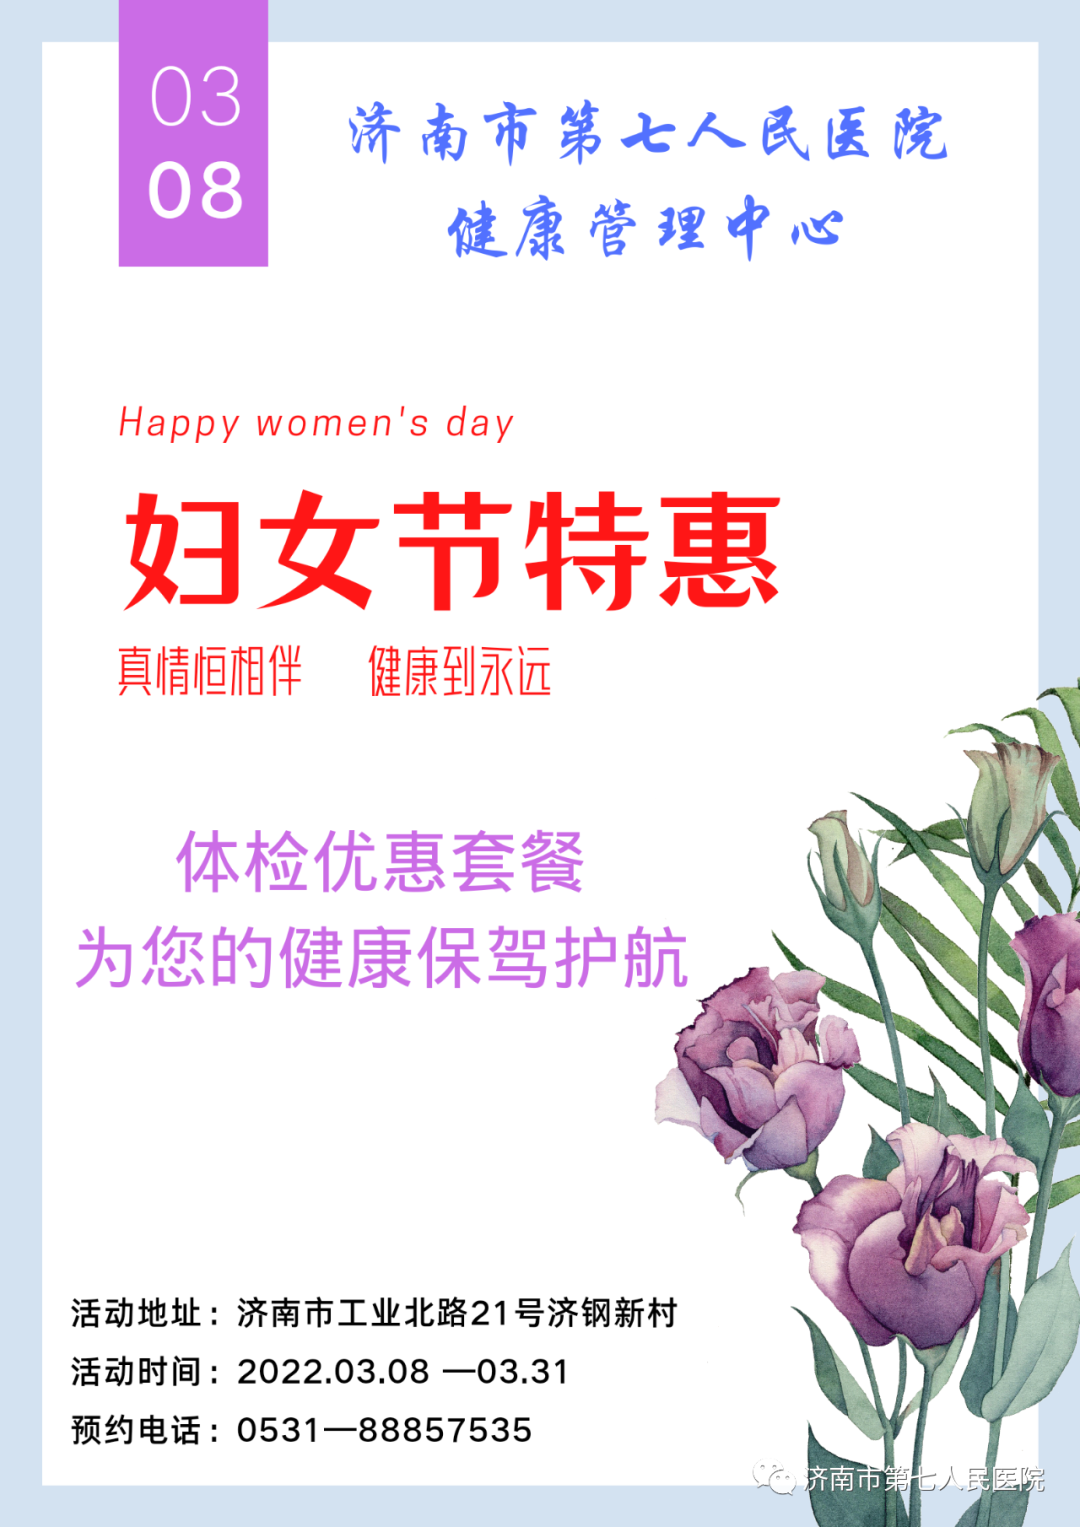 济南市第七人民医院:三八妇女节 特惠体检套餐抢先看